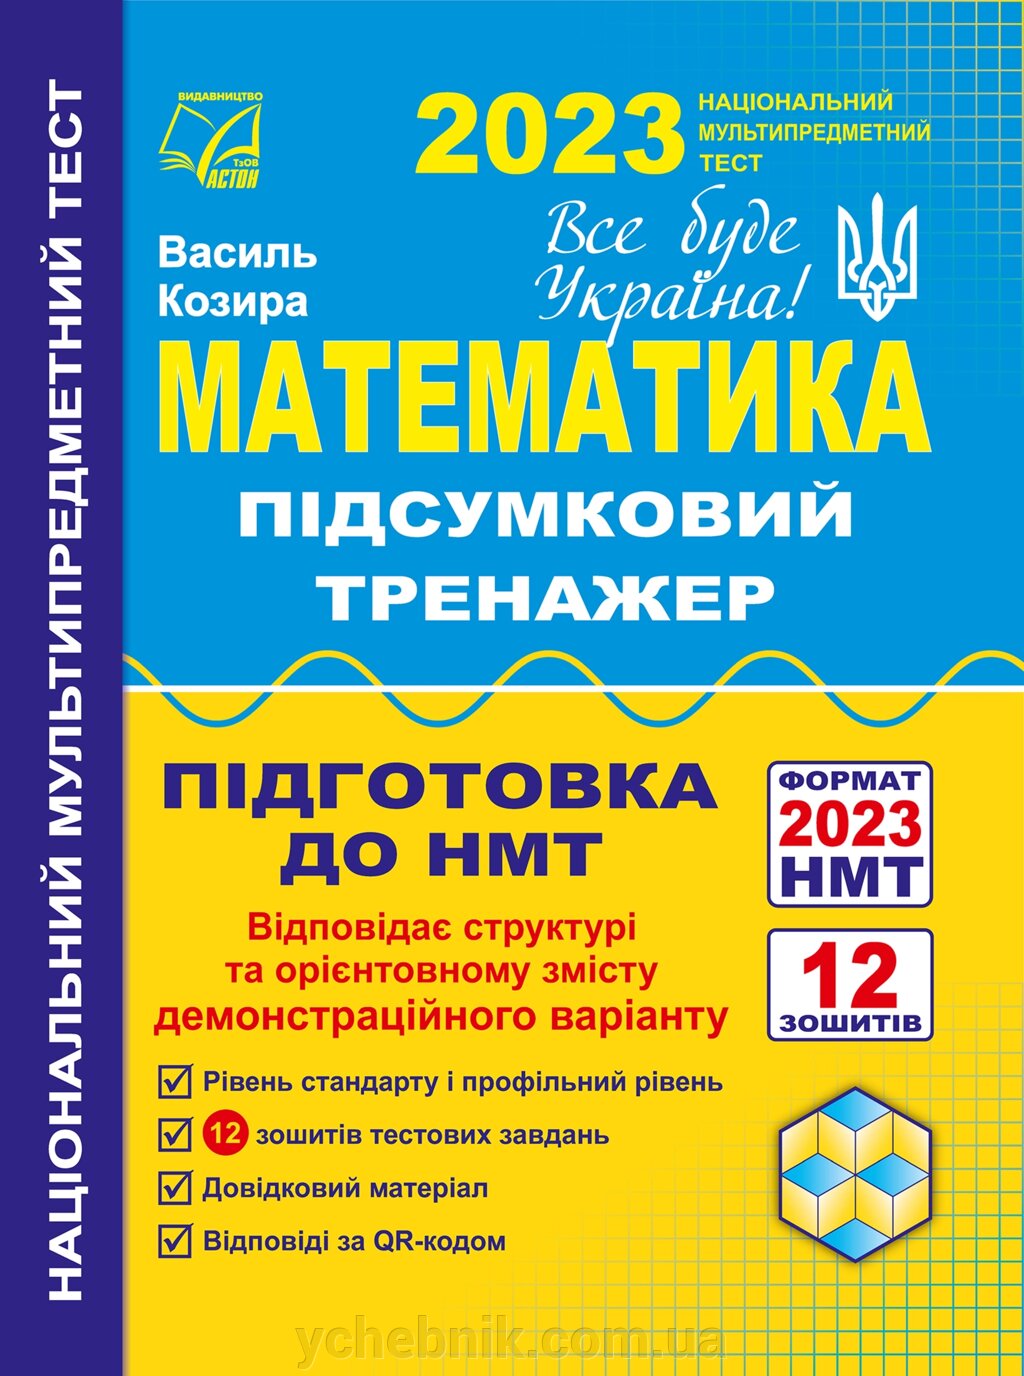 Математика Підсумковий тренажер для підготовки до НМТ–2023 (Паперовий формат) Козира В. 2023 від компанії ychebnik. com. ua - фото 1